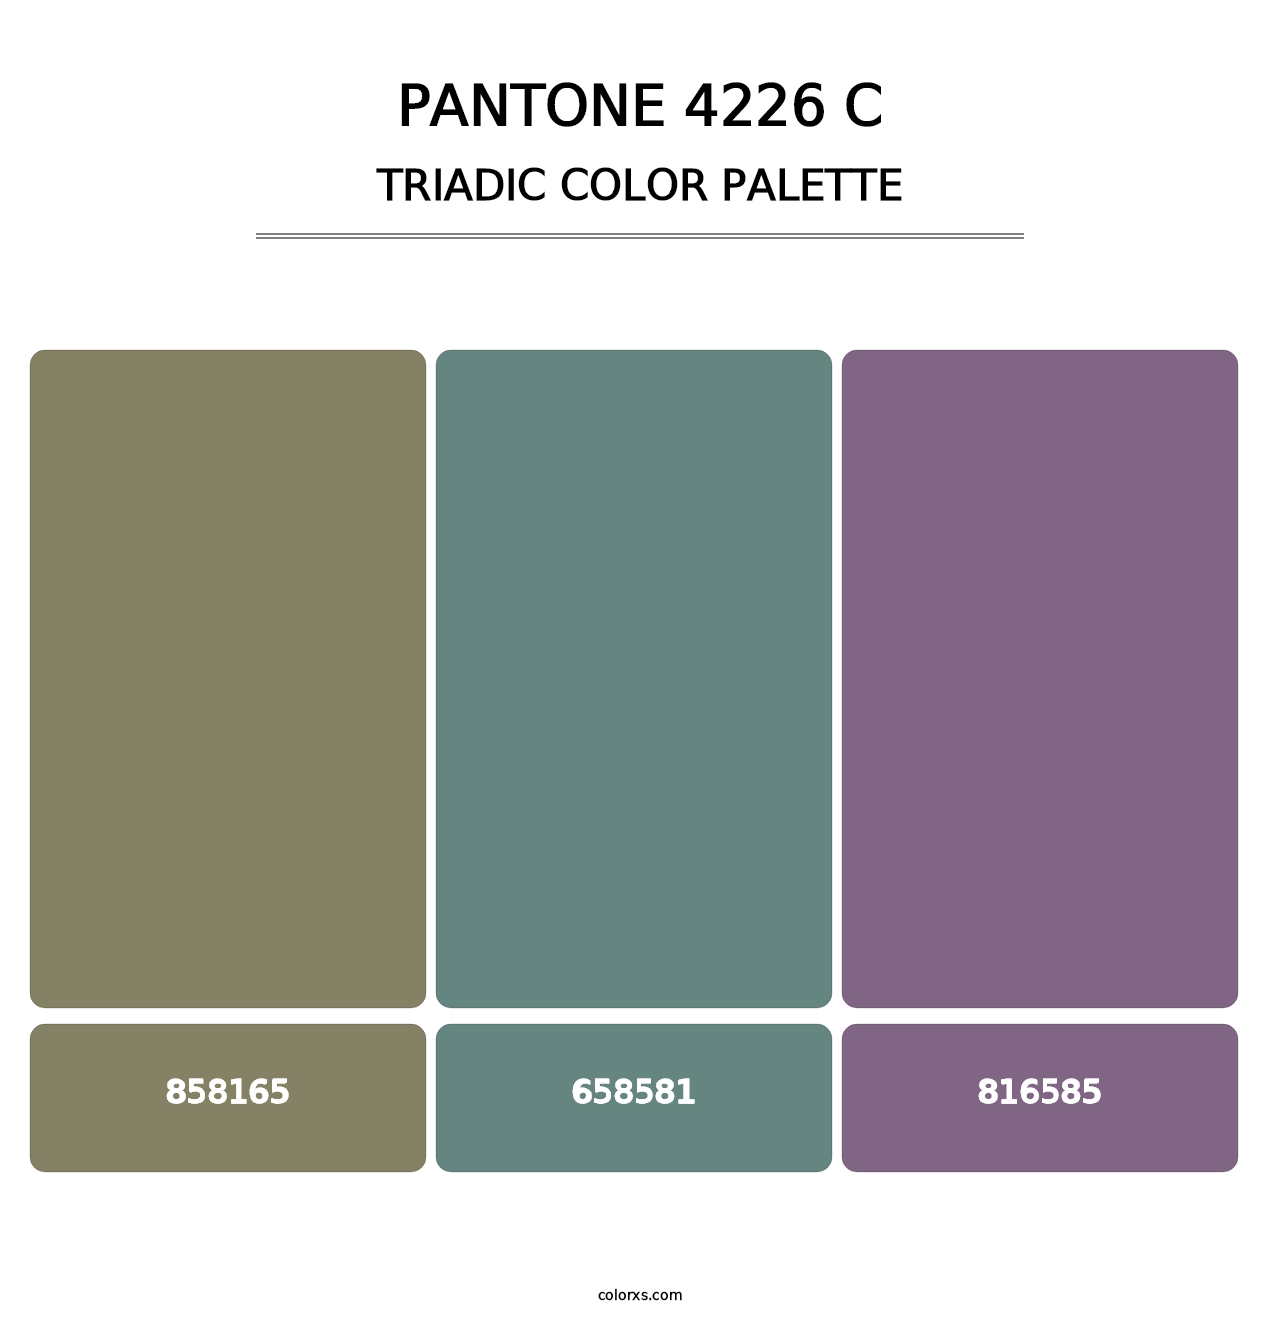 PANTONE 4226 C - Triadic Color Palette